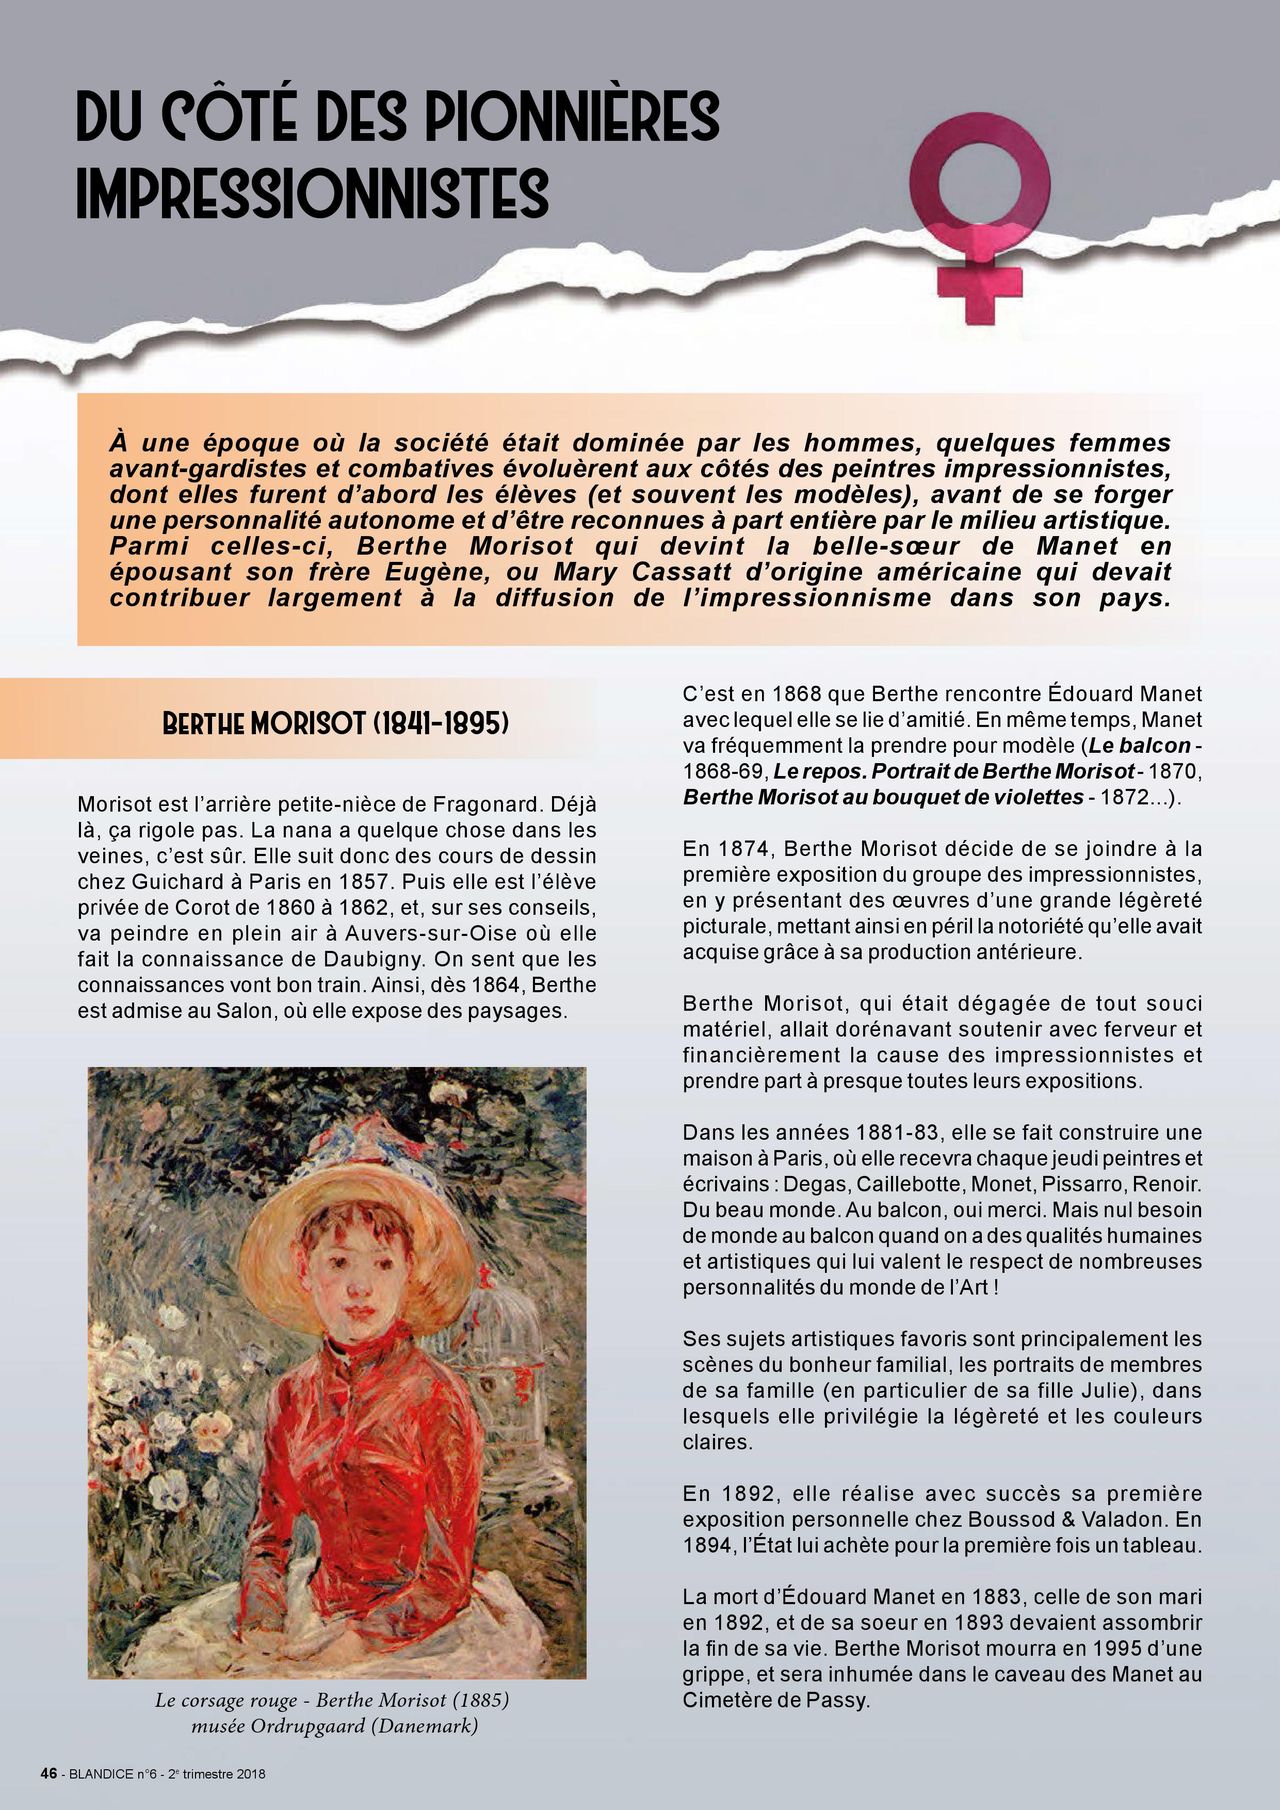 Blandice - 06 - Limpressionnisme dans la bd numero d'image 47